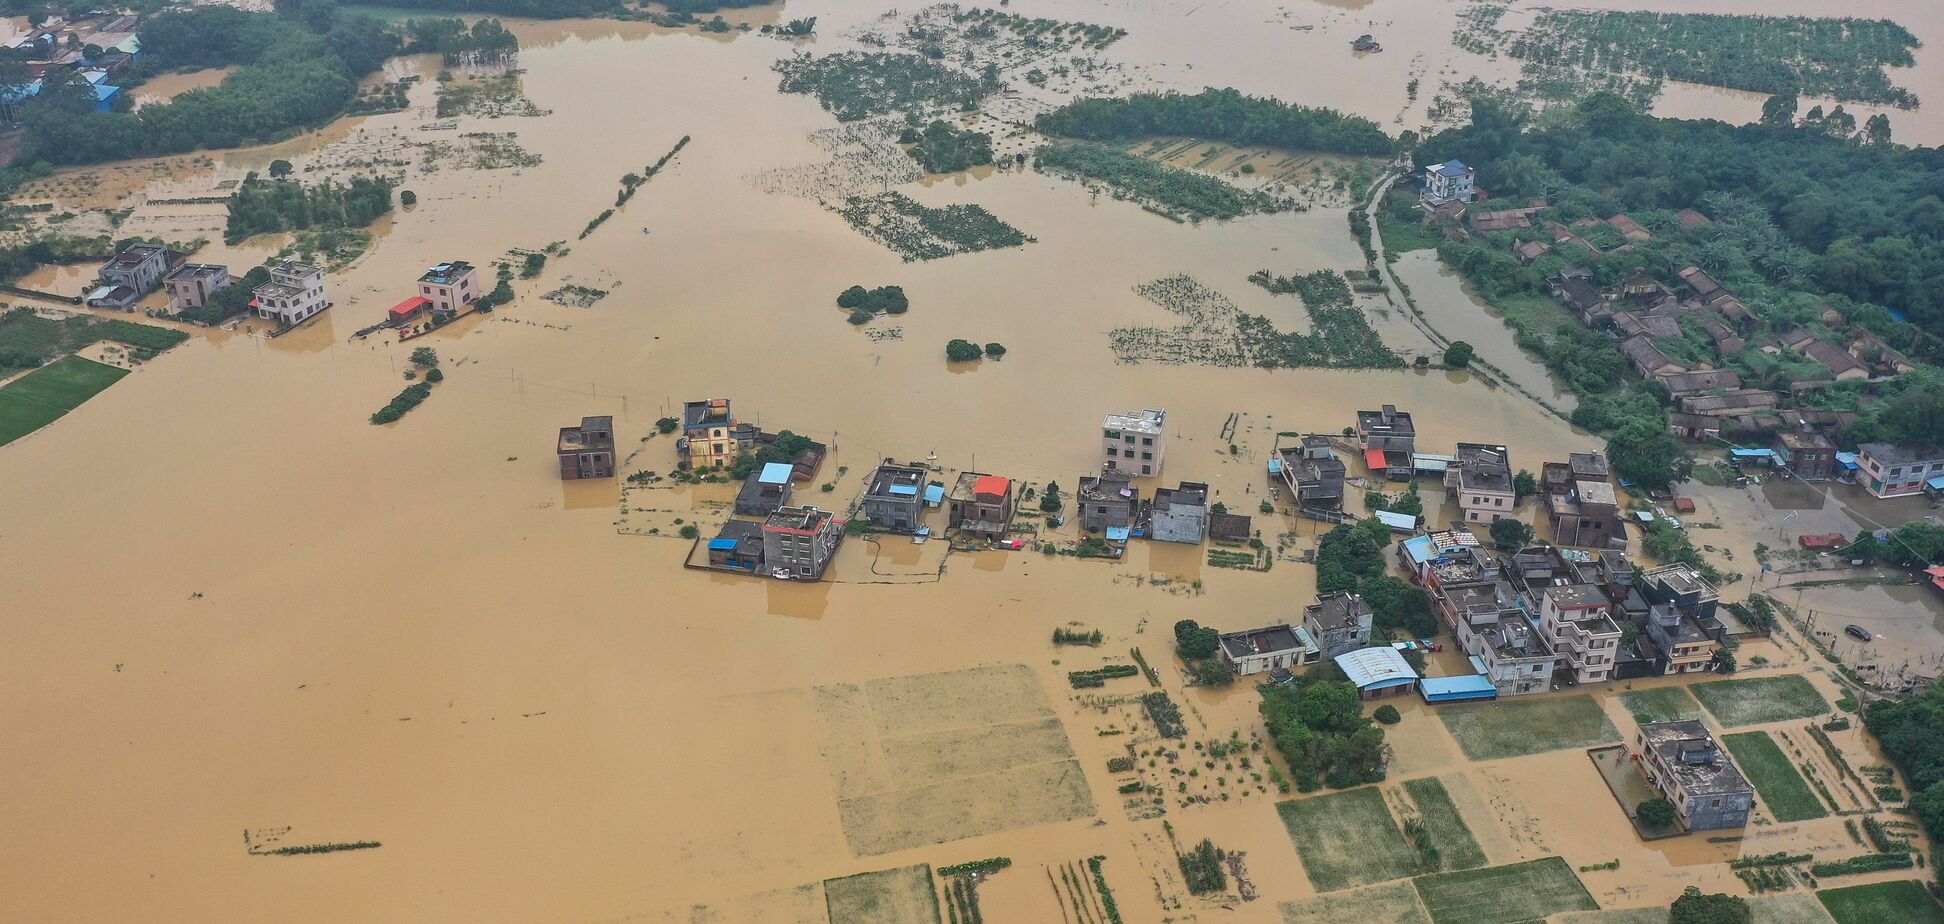 Из-за сильнейшего наводнения в Китае пострадали более 2,6 млн человек. Фото и видео стихии